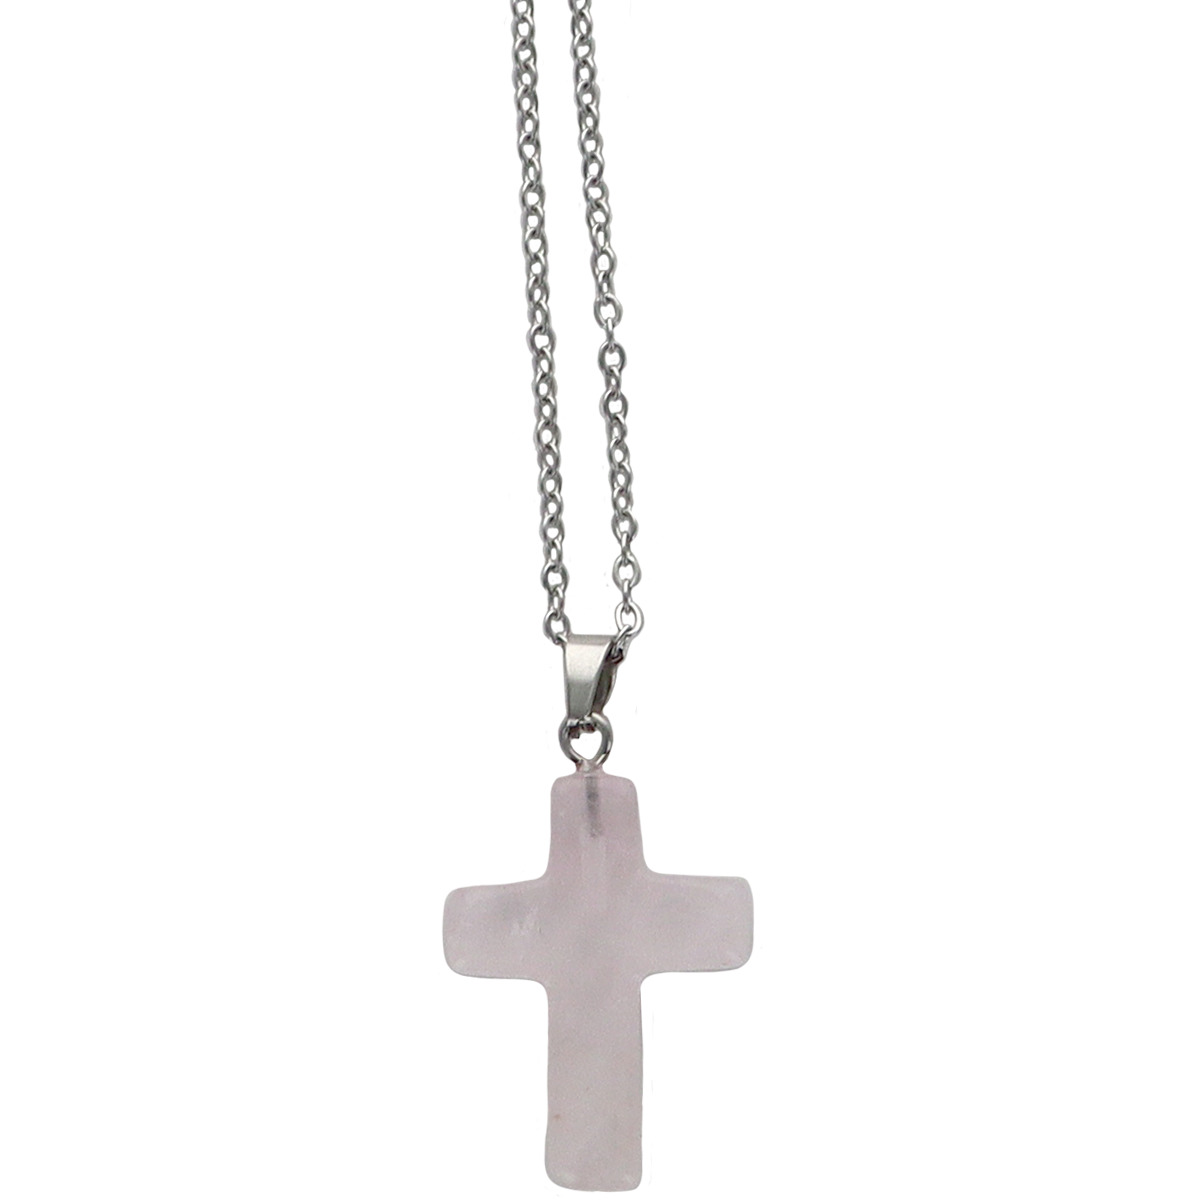 Collier avec croix en pierre naturelle H 2.4 cm sur chaine maille forçat en acier inoxydable L. 45 cm ajustable. 